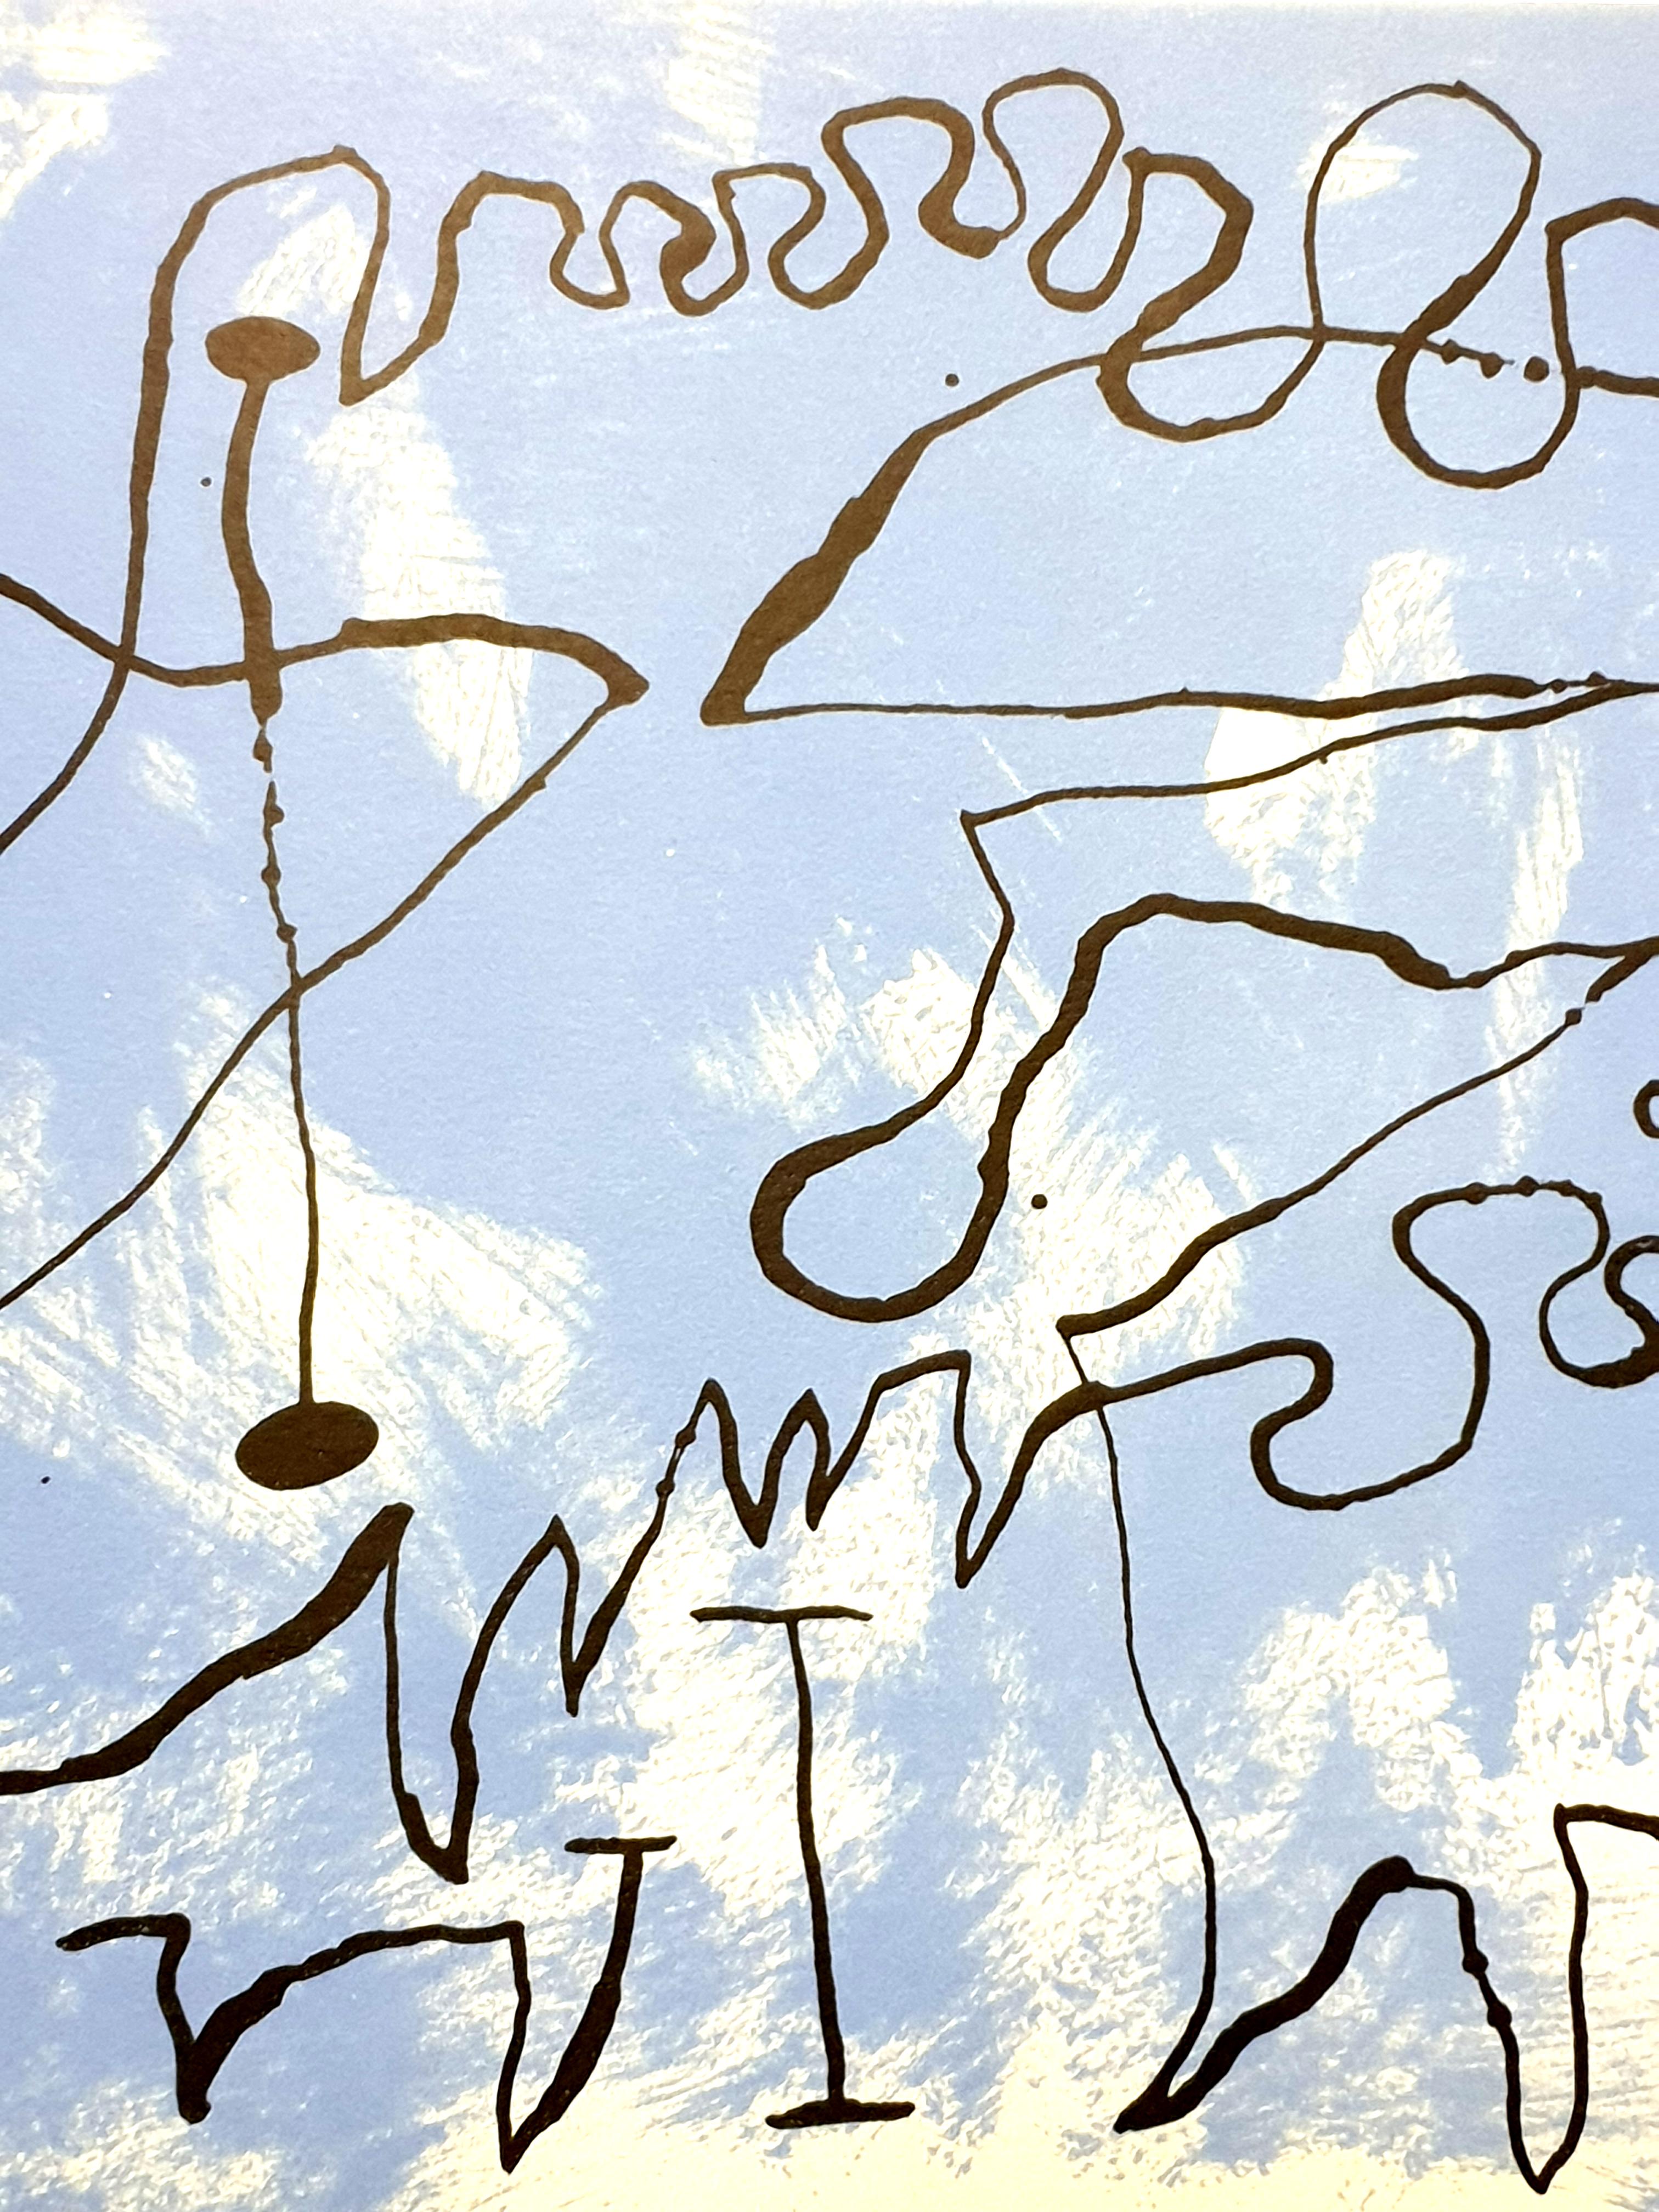 Joan Miro - Blue Maze - Lithographie originale
Artiste : Joan Miro
Rédacteur en chef : Maeght
Année : 1956
Dimensions : 23 x 38 cm
Non signé et non numéroté tel que publié
De Miro par Jacques Prevert
Référence : Mourlot 234
L'œuvre d'art est centrée